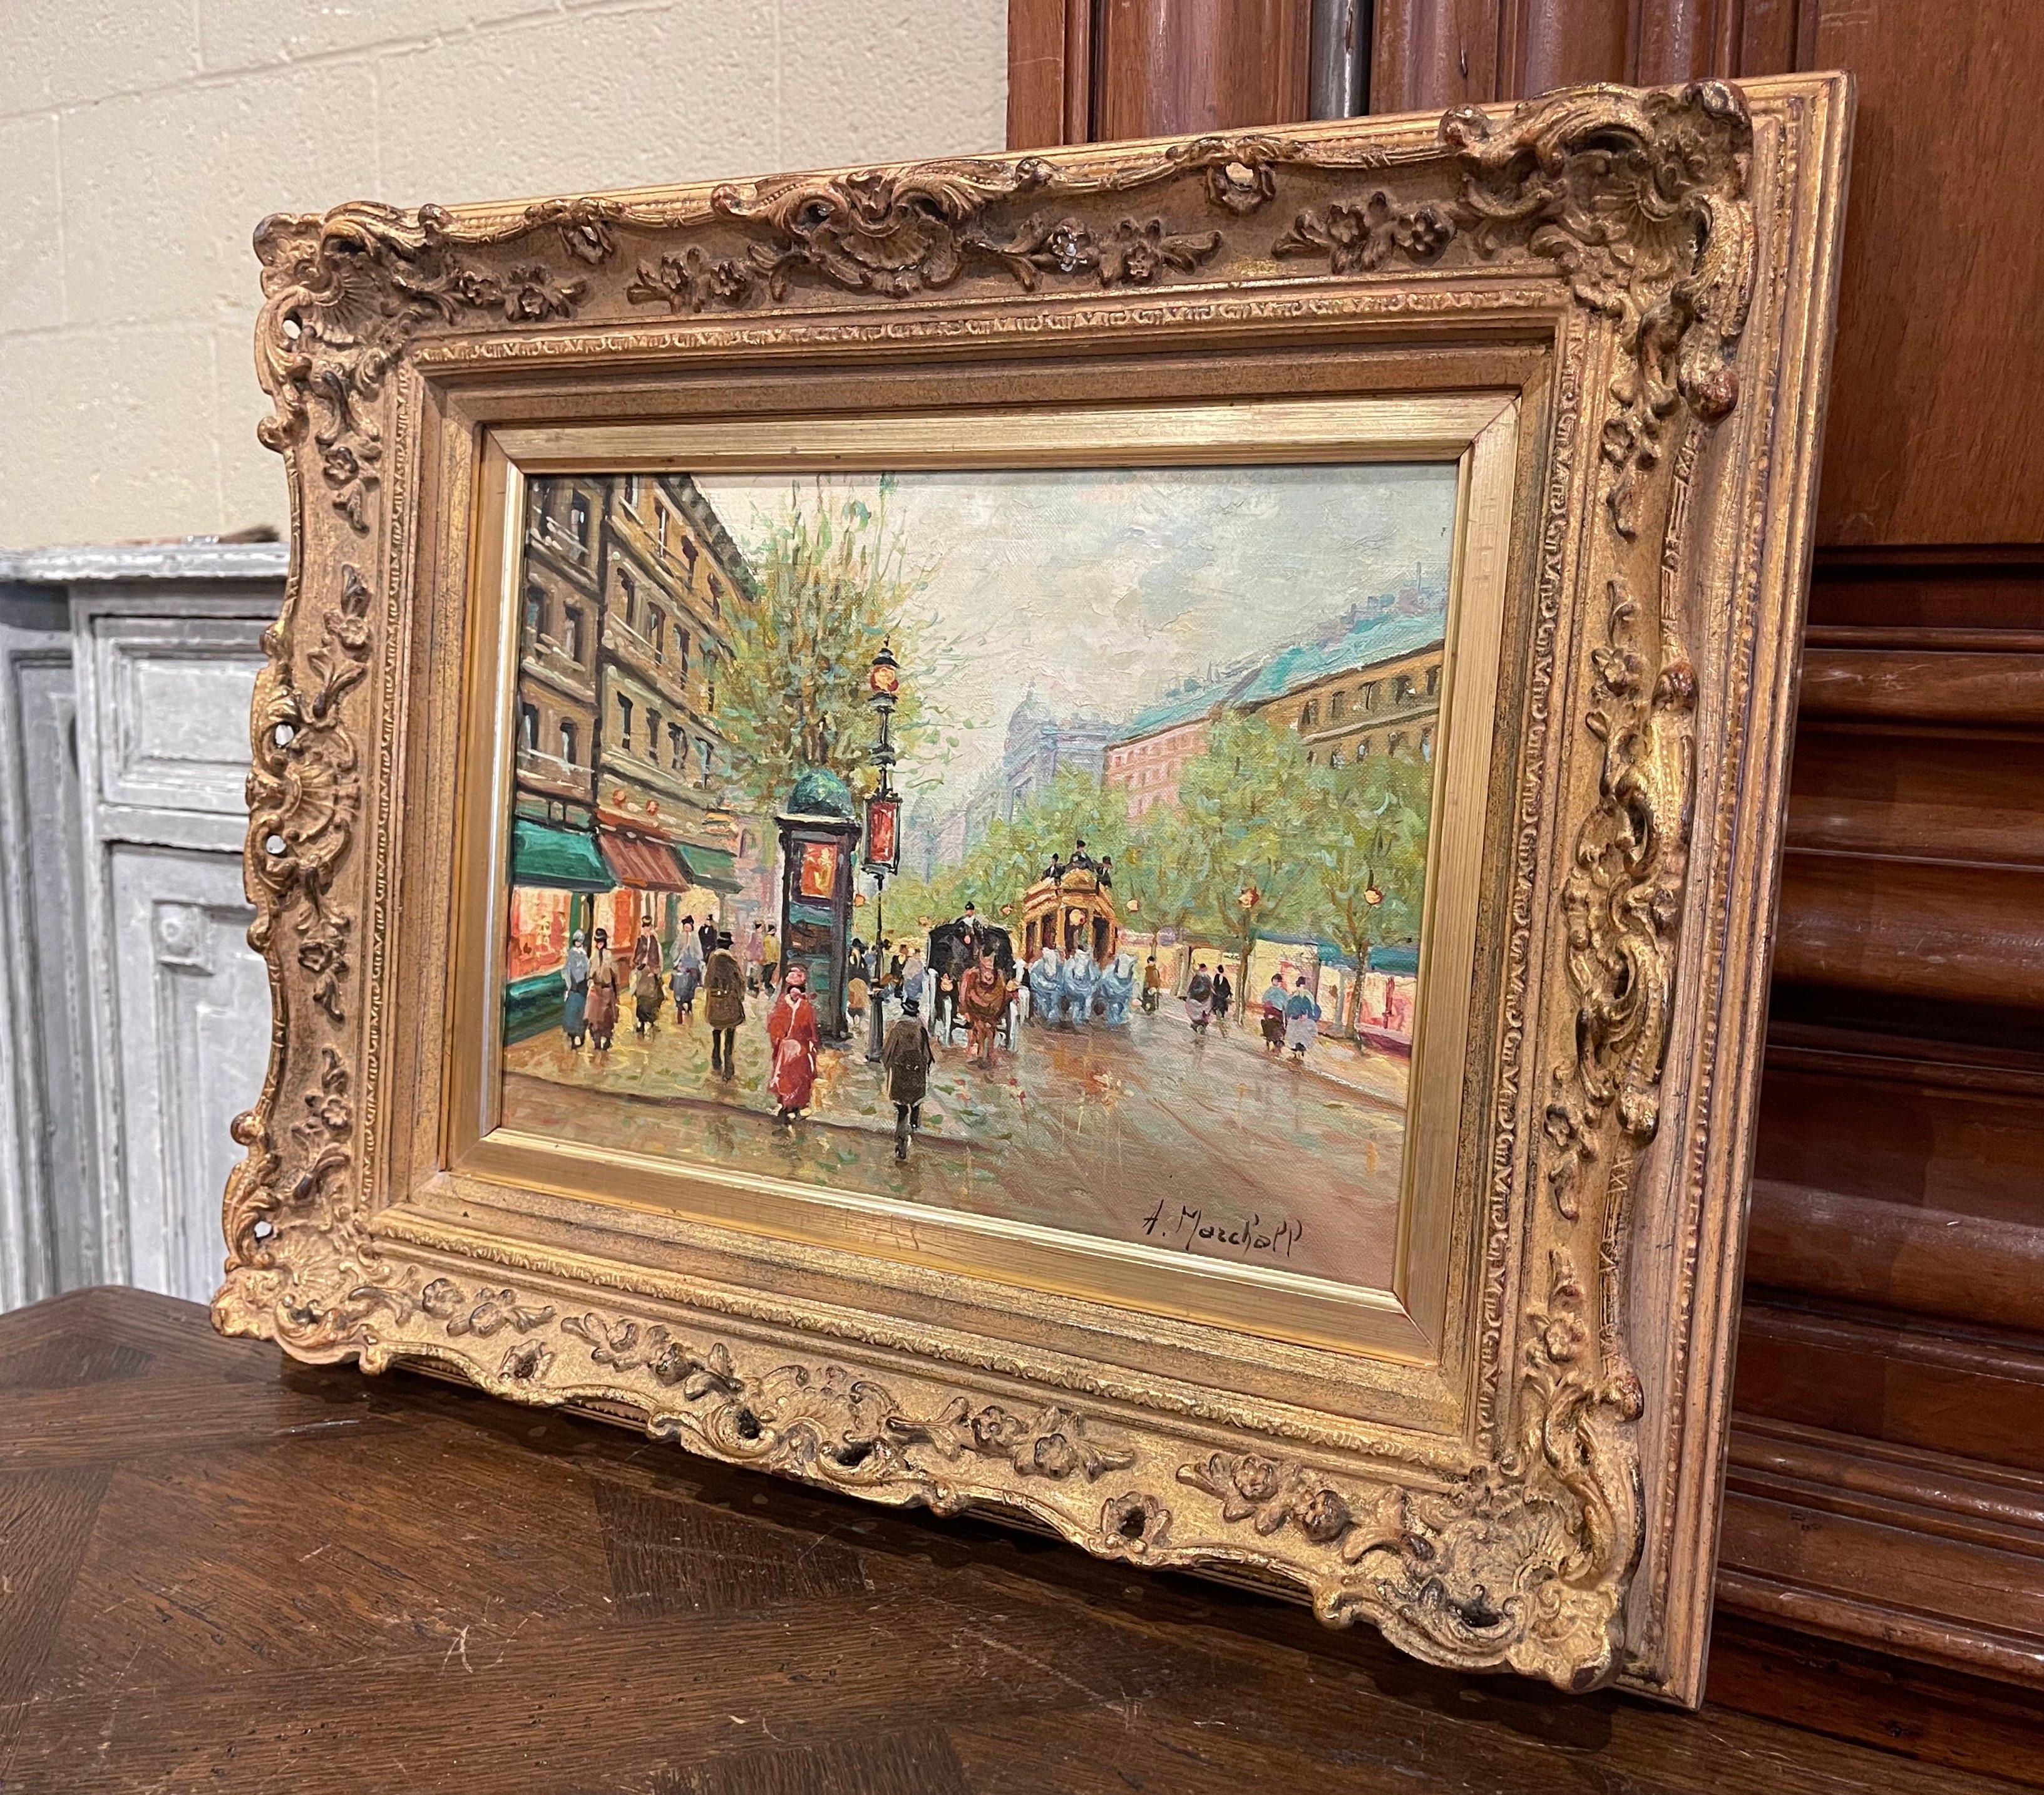 Décorez un bureau ou un espace de vie avec cette magnifique peinture à l'huile sur toile. Présentée dans son cadre doré sculpté d'origine et créée vers 1960, cette œuvre d'art représente une scène typique du Paris de la fin du XIXe siècle, avec des